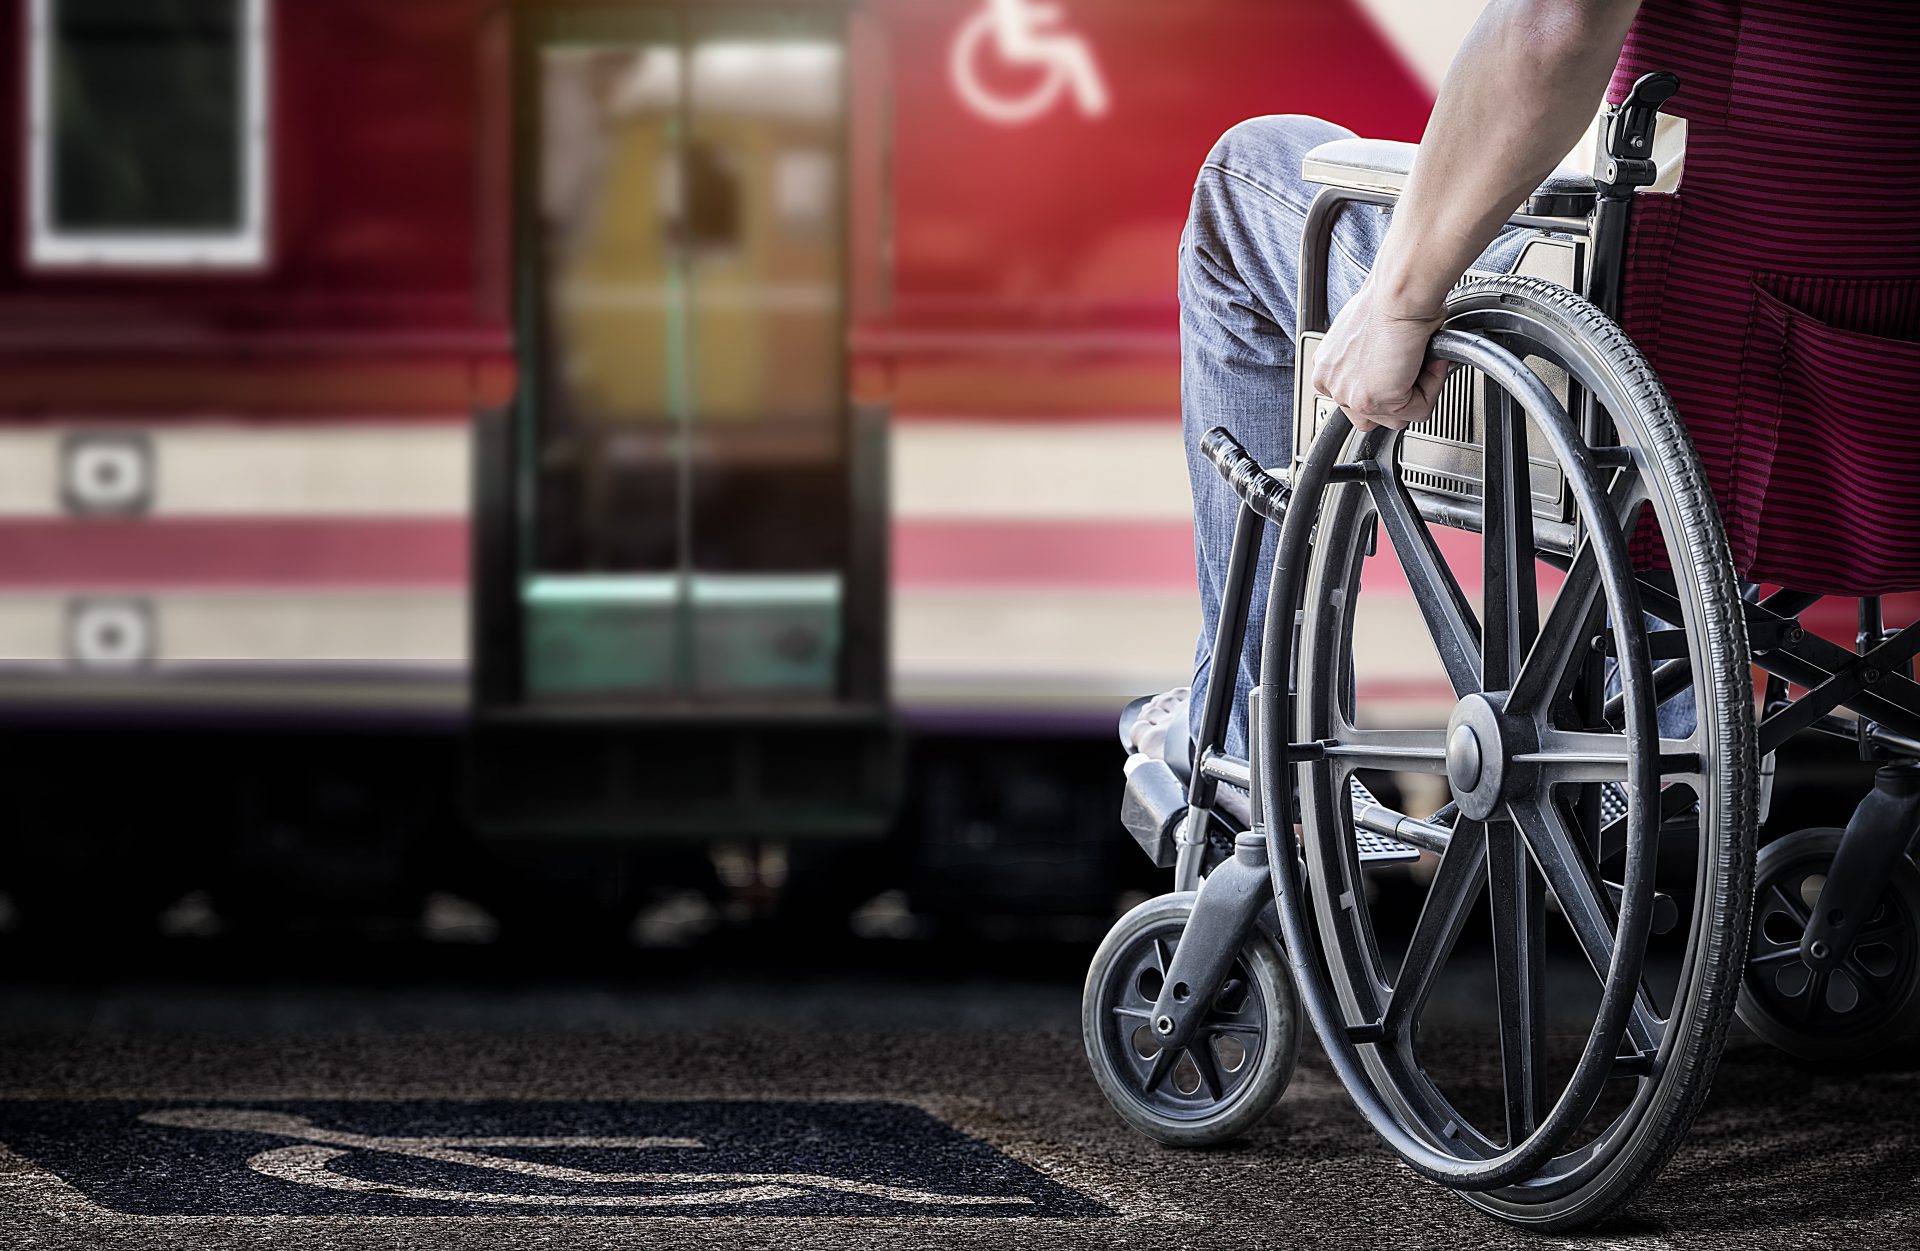 Δε φταίνε τα άτομα με αναπηρίες που χτίσαμε και ζούμε σε κοινωνίες ανάπηρες! Καιρός να τις αλλάξουμε!